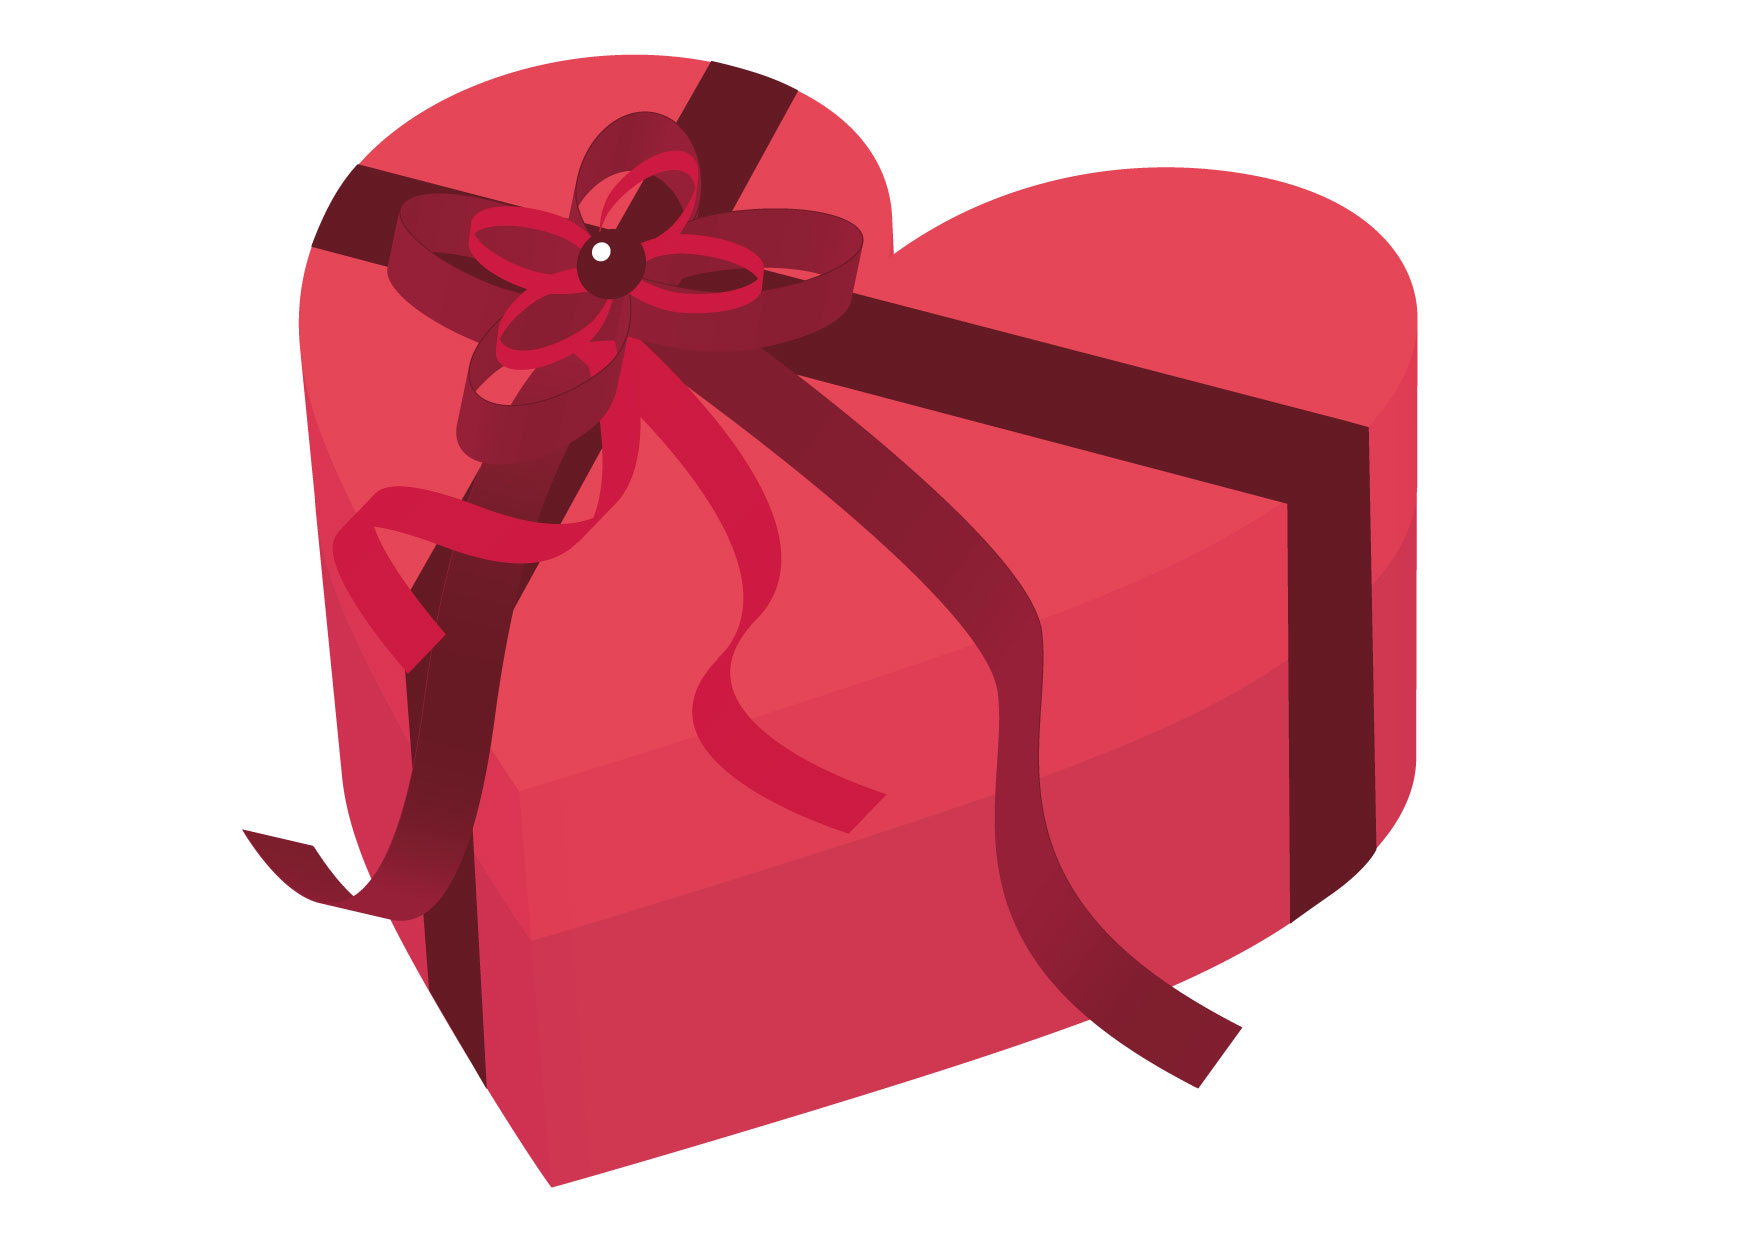 可愛いイラスト無料 バレンタイン ハート ピンク 箱 Free Illustration Valentine Heart Pink Box 公式 イラストダウンロード